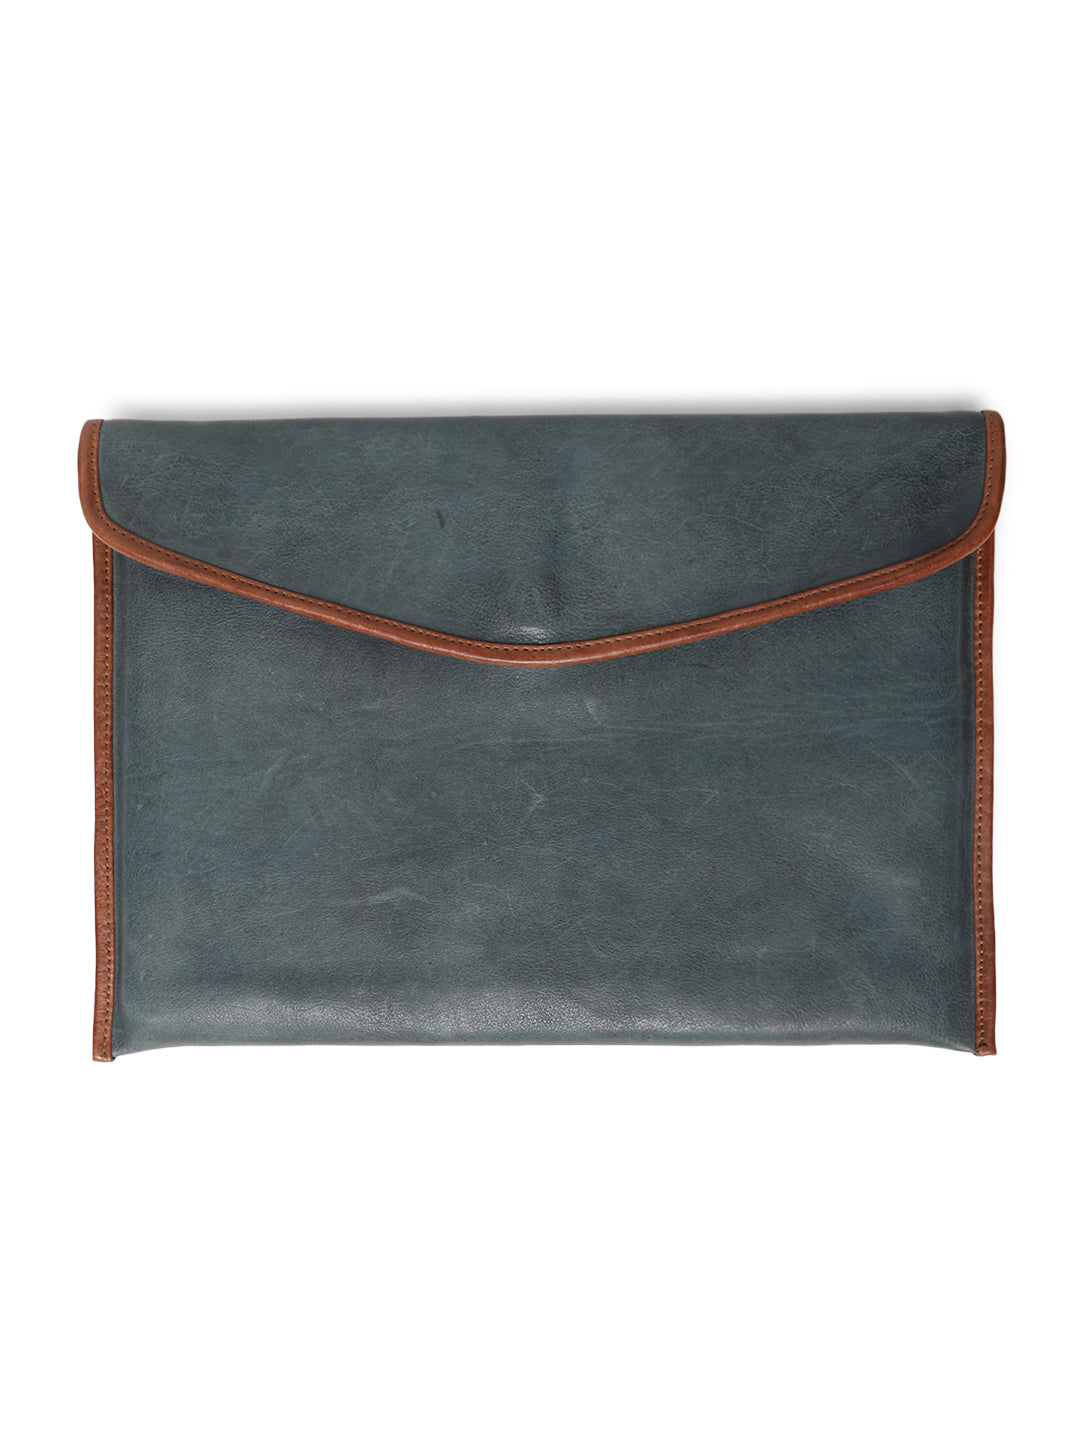 SleekSkin: Navy Genuine Leather Laptop Sleeves